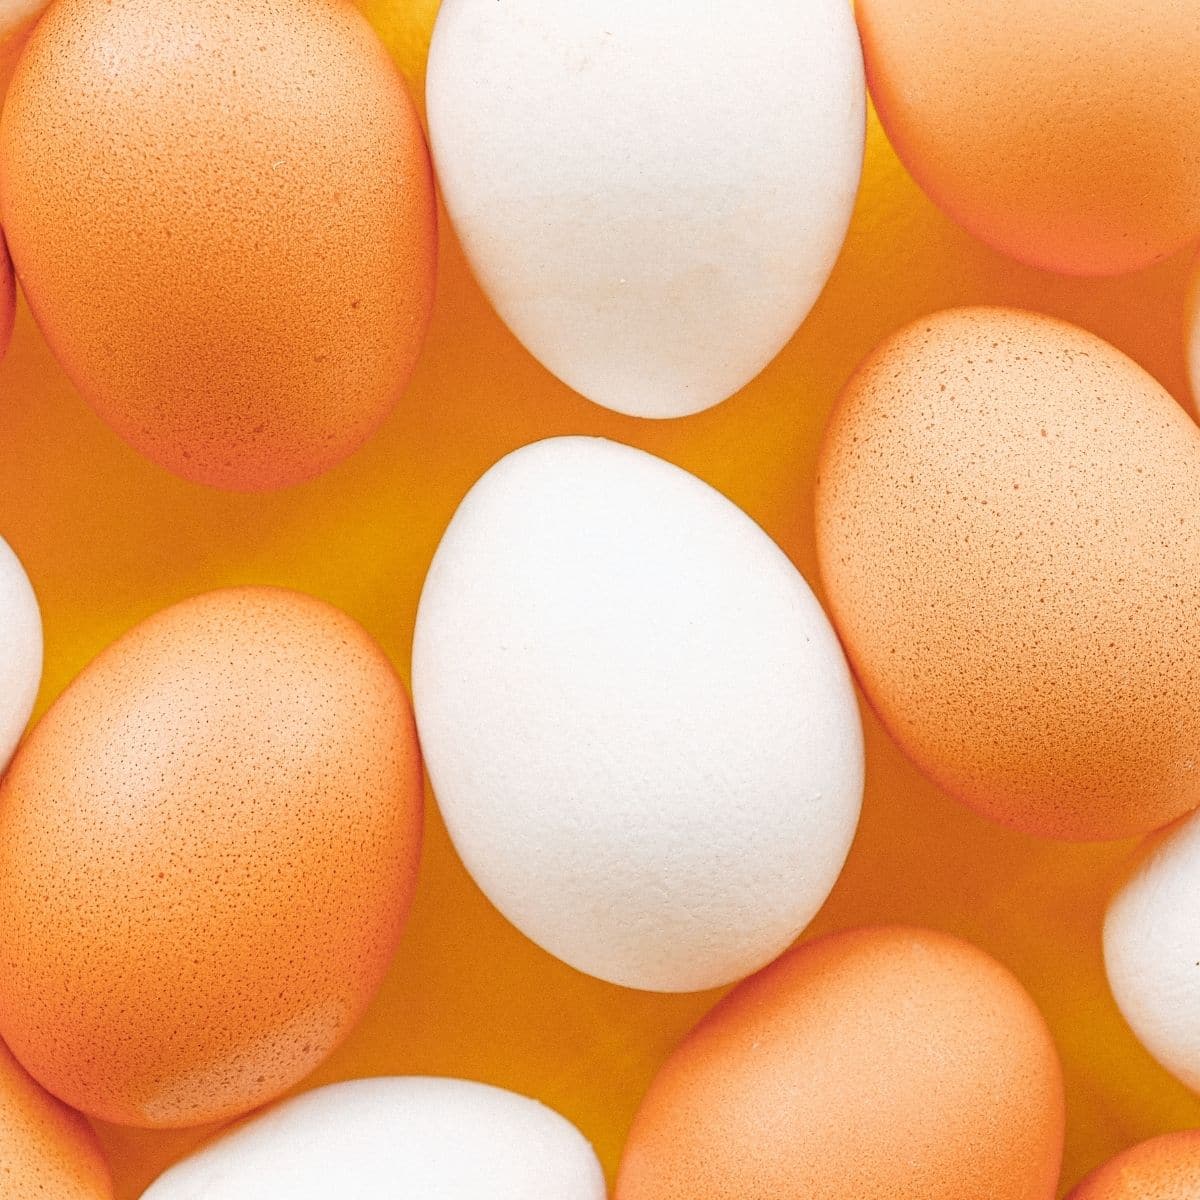 Meilleure image carrée de remplacement eqq d'œufs bruns et blancs entiers assortis.